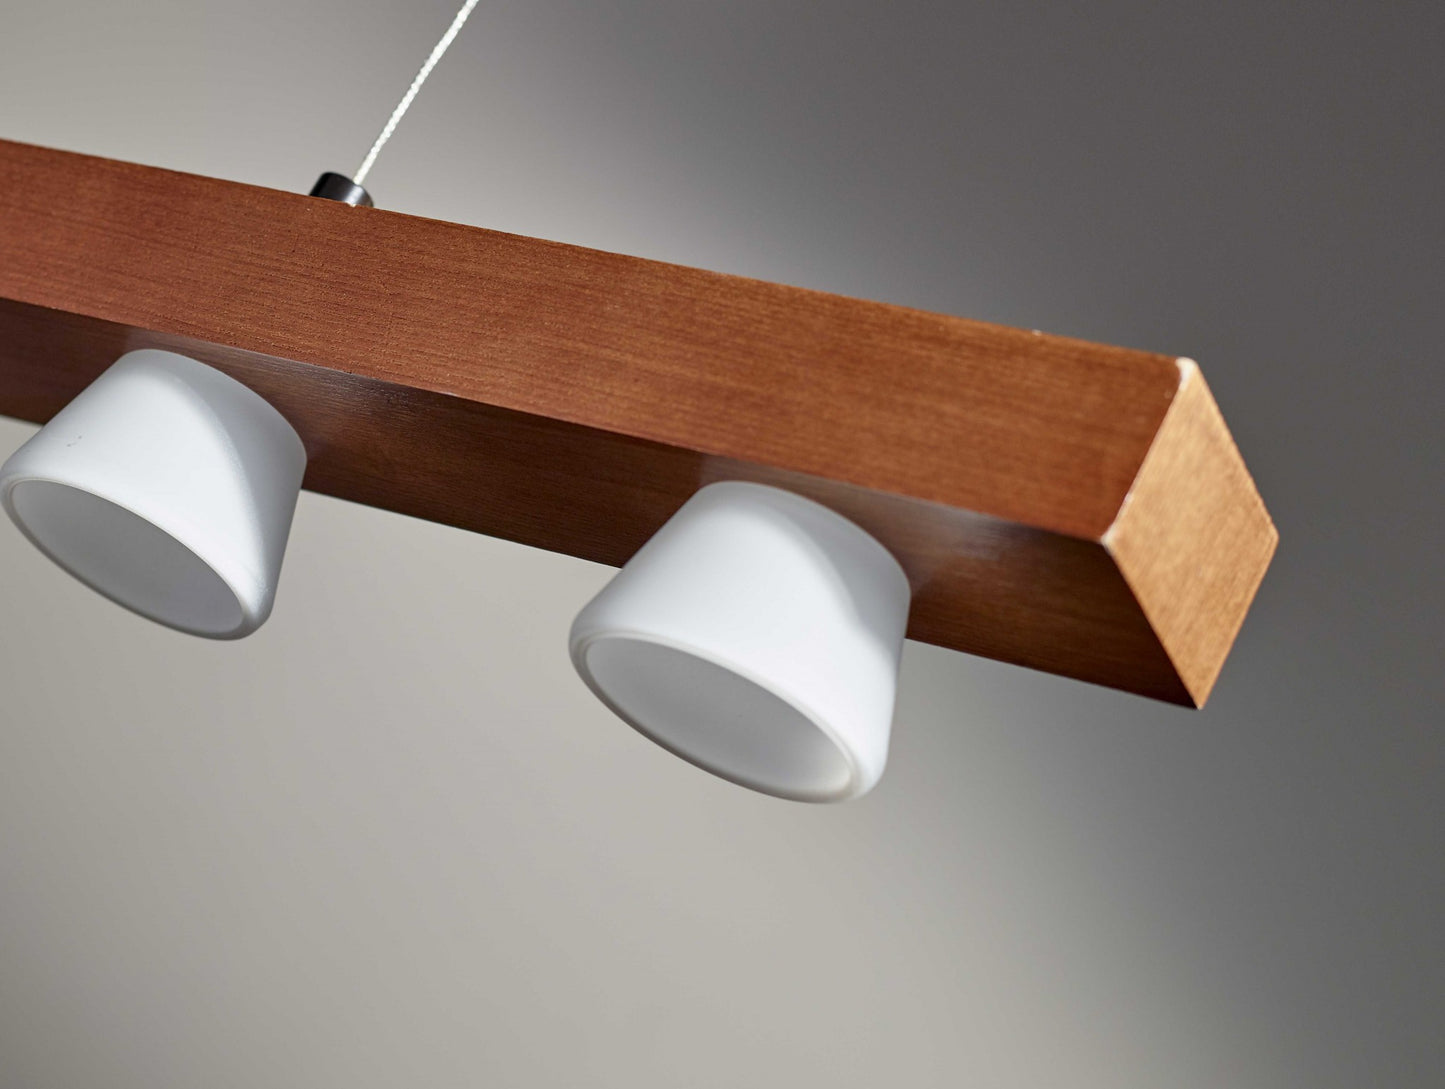 Walnut Wood LED Light Adjustable Pendant By Homeroots - 372516